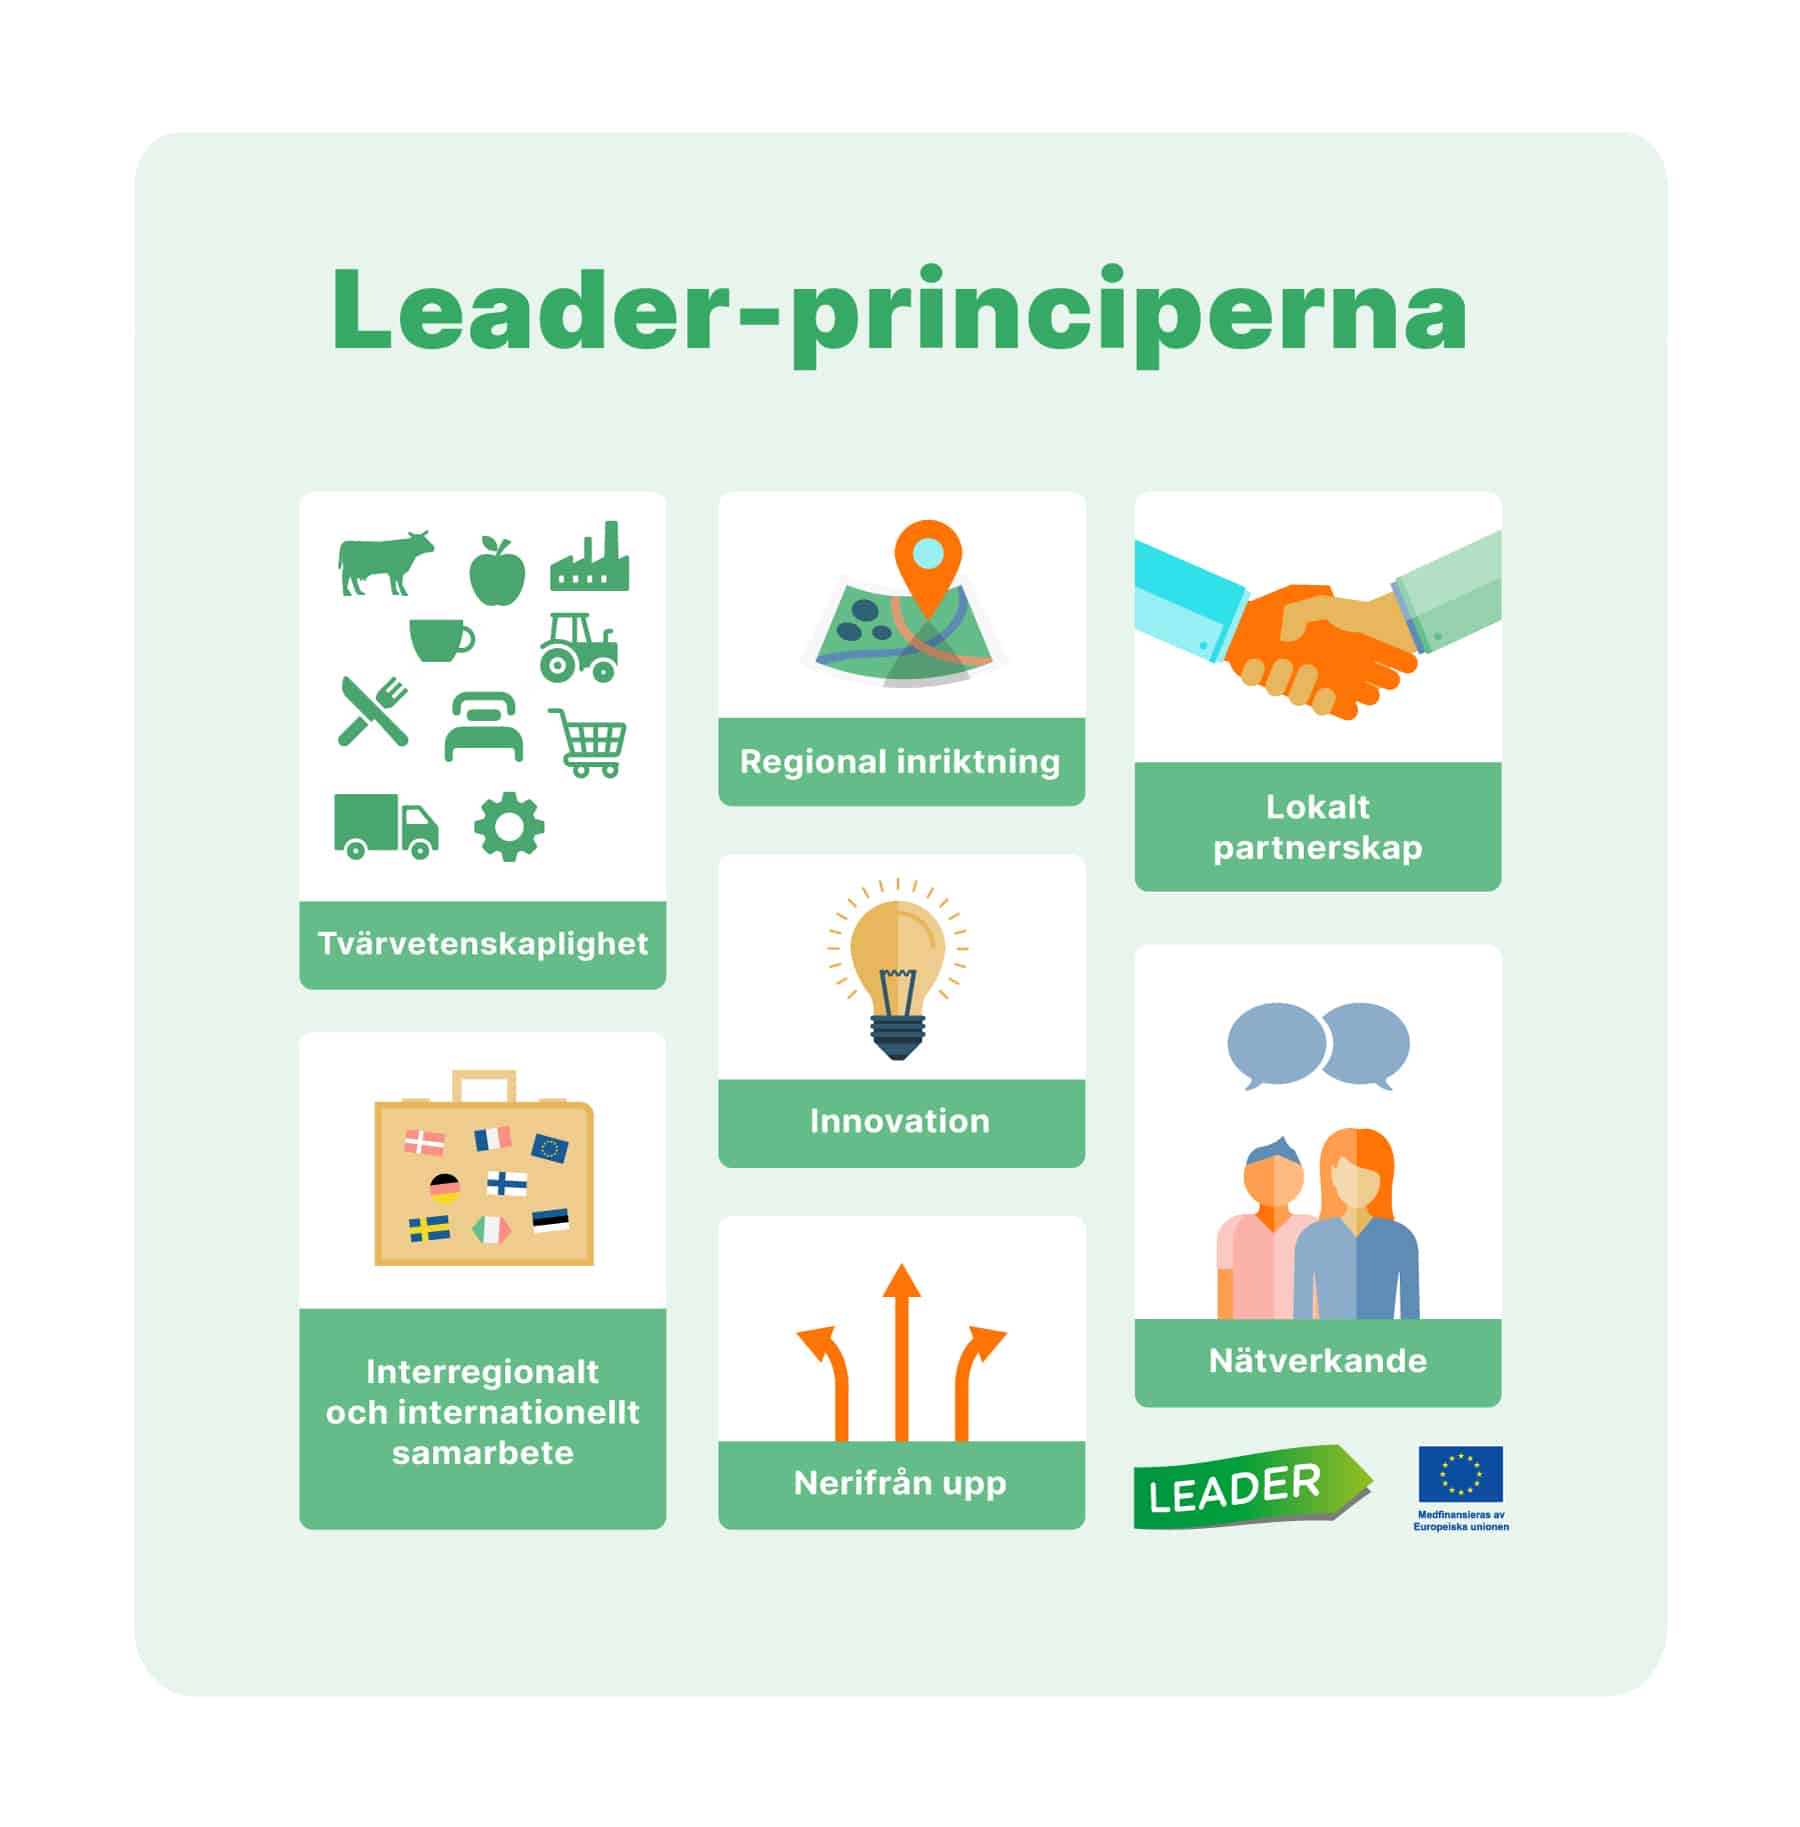 Leader-principerna: tvärvetenskaplighet, regional inriktning, lokalt partnerskap, innovation, interregionalt och internationellt samarbete, nerifrån upp, nätverkande.